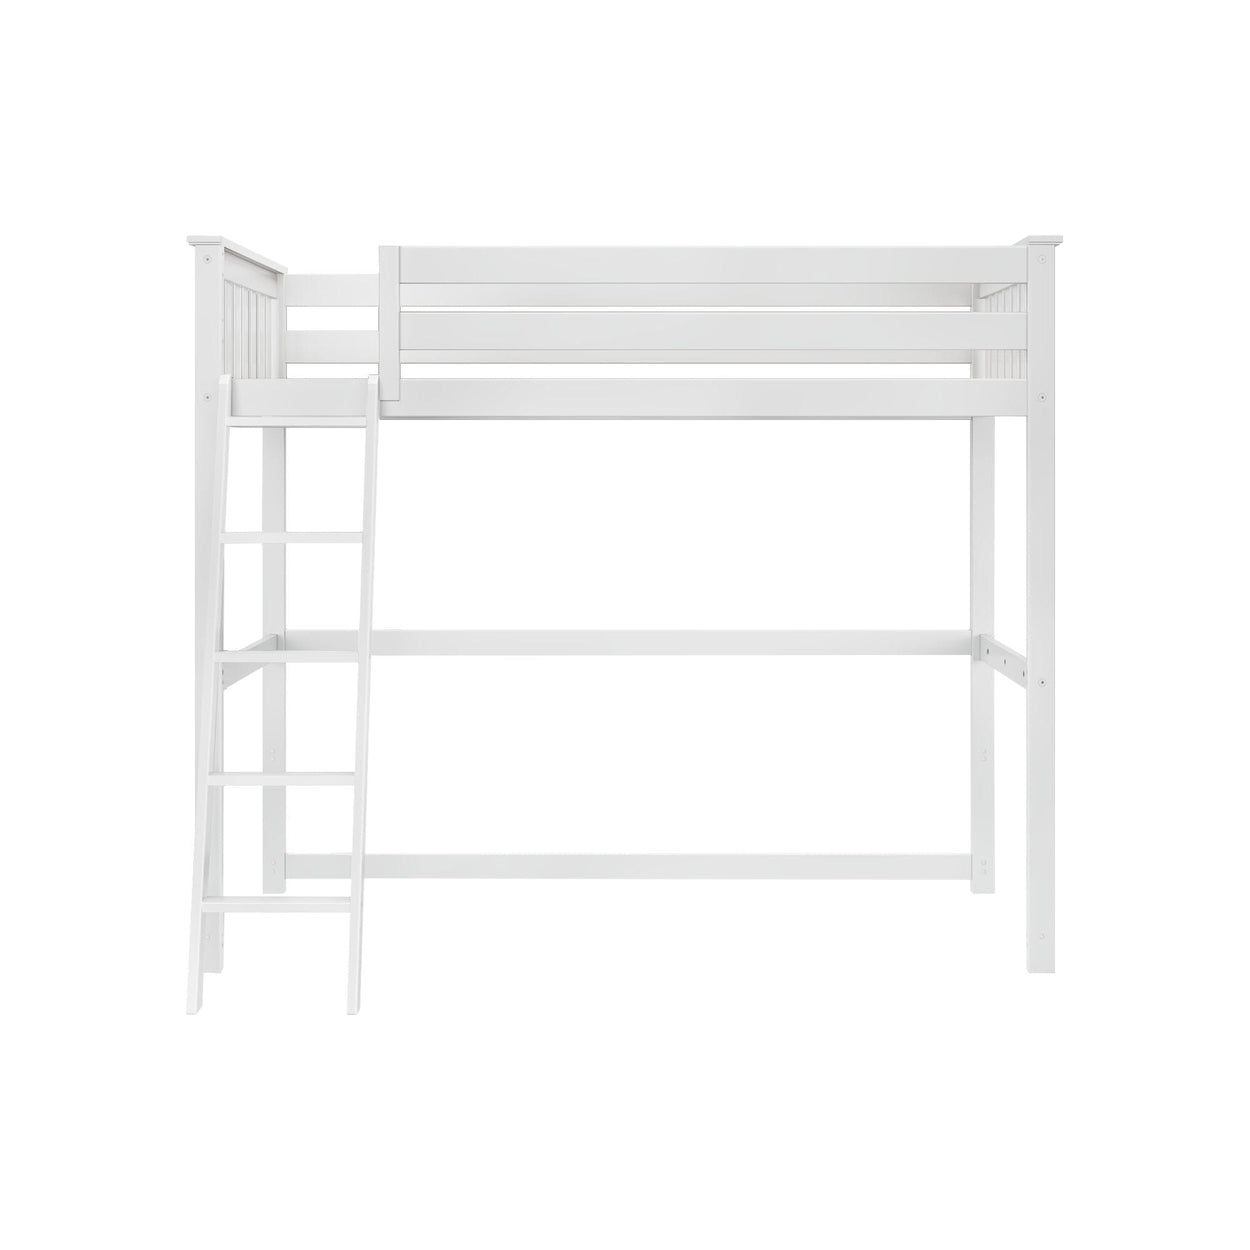 180427-002 : Loft Beds Twin High Loft, White